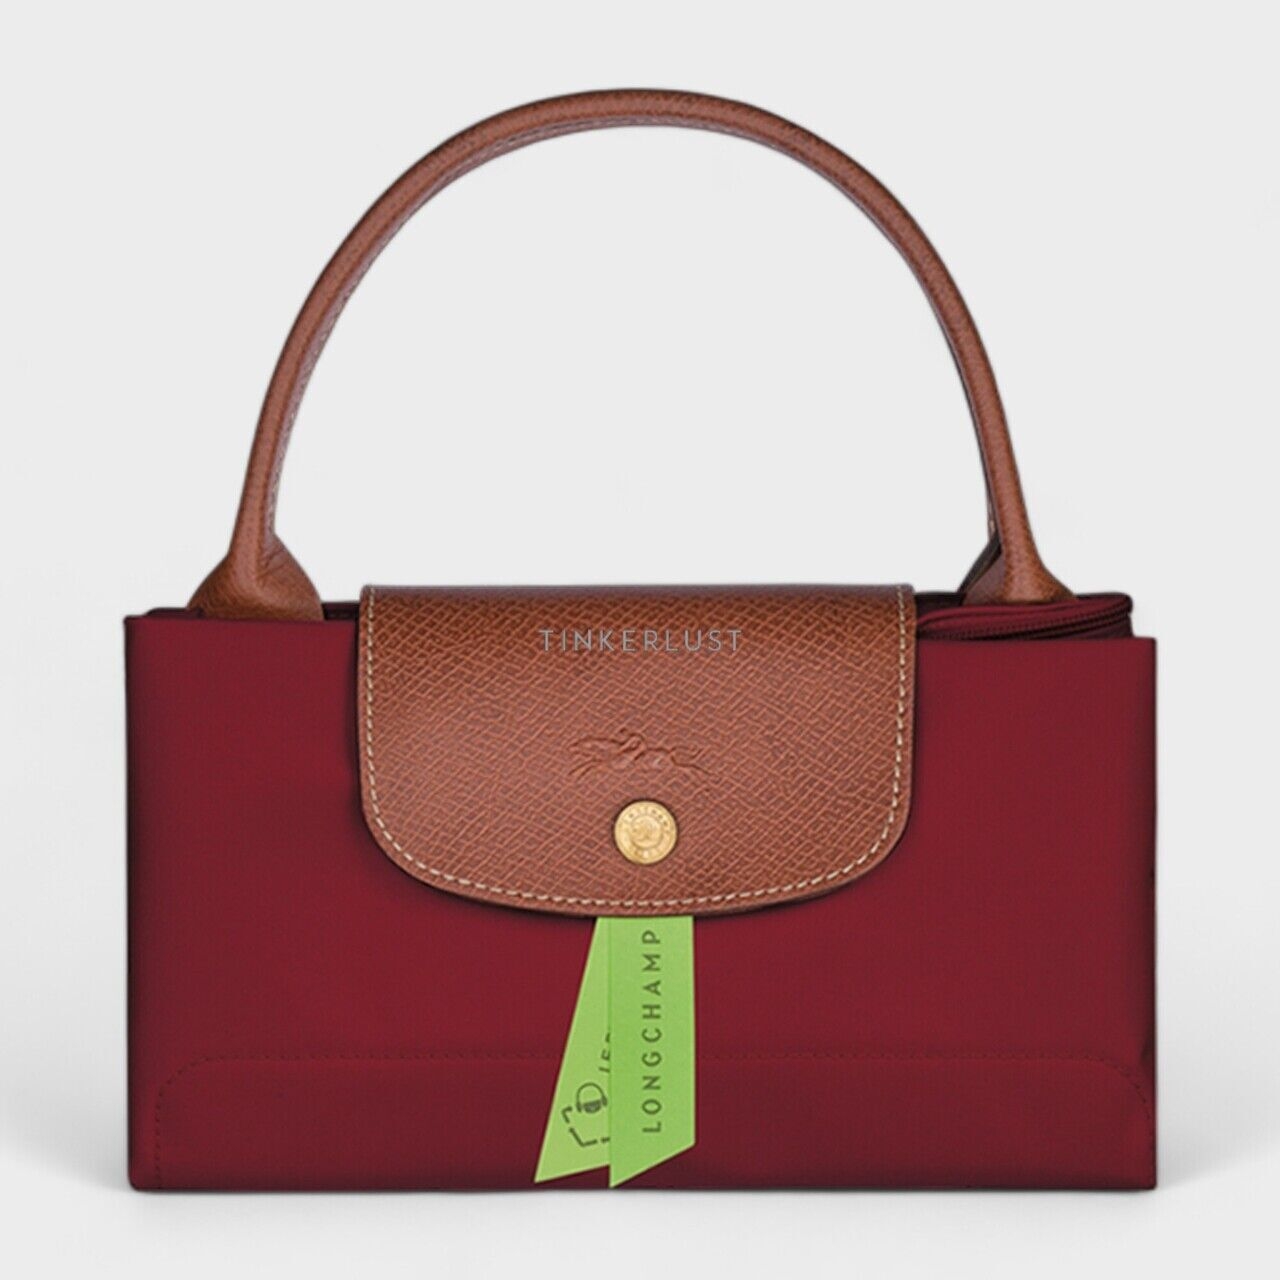 Longchamp Medium Le Pliage Top Handle Bag in Dark Red Handbag